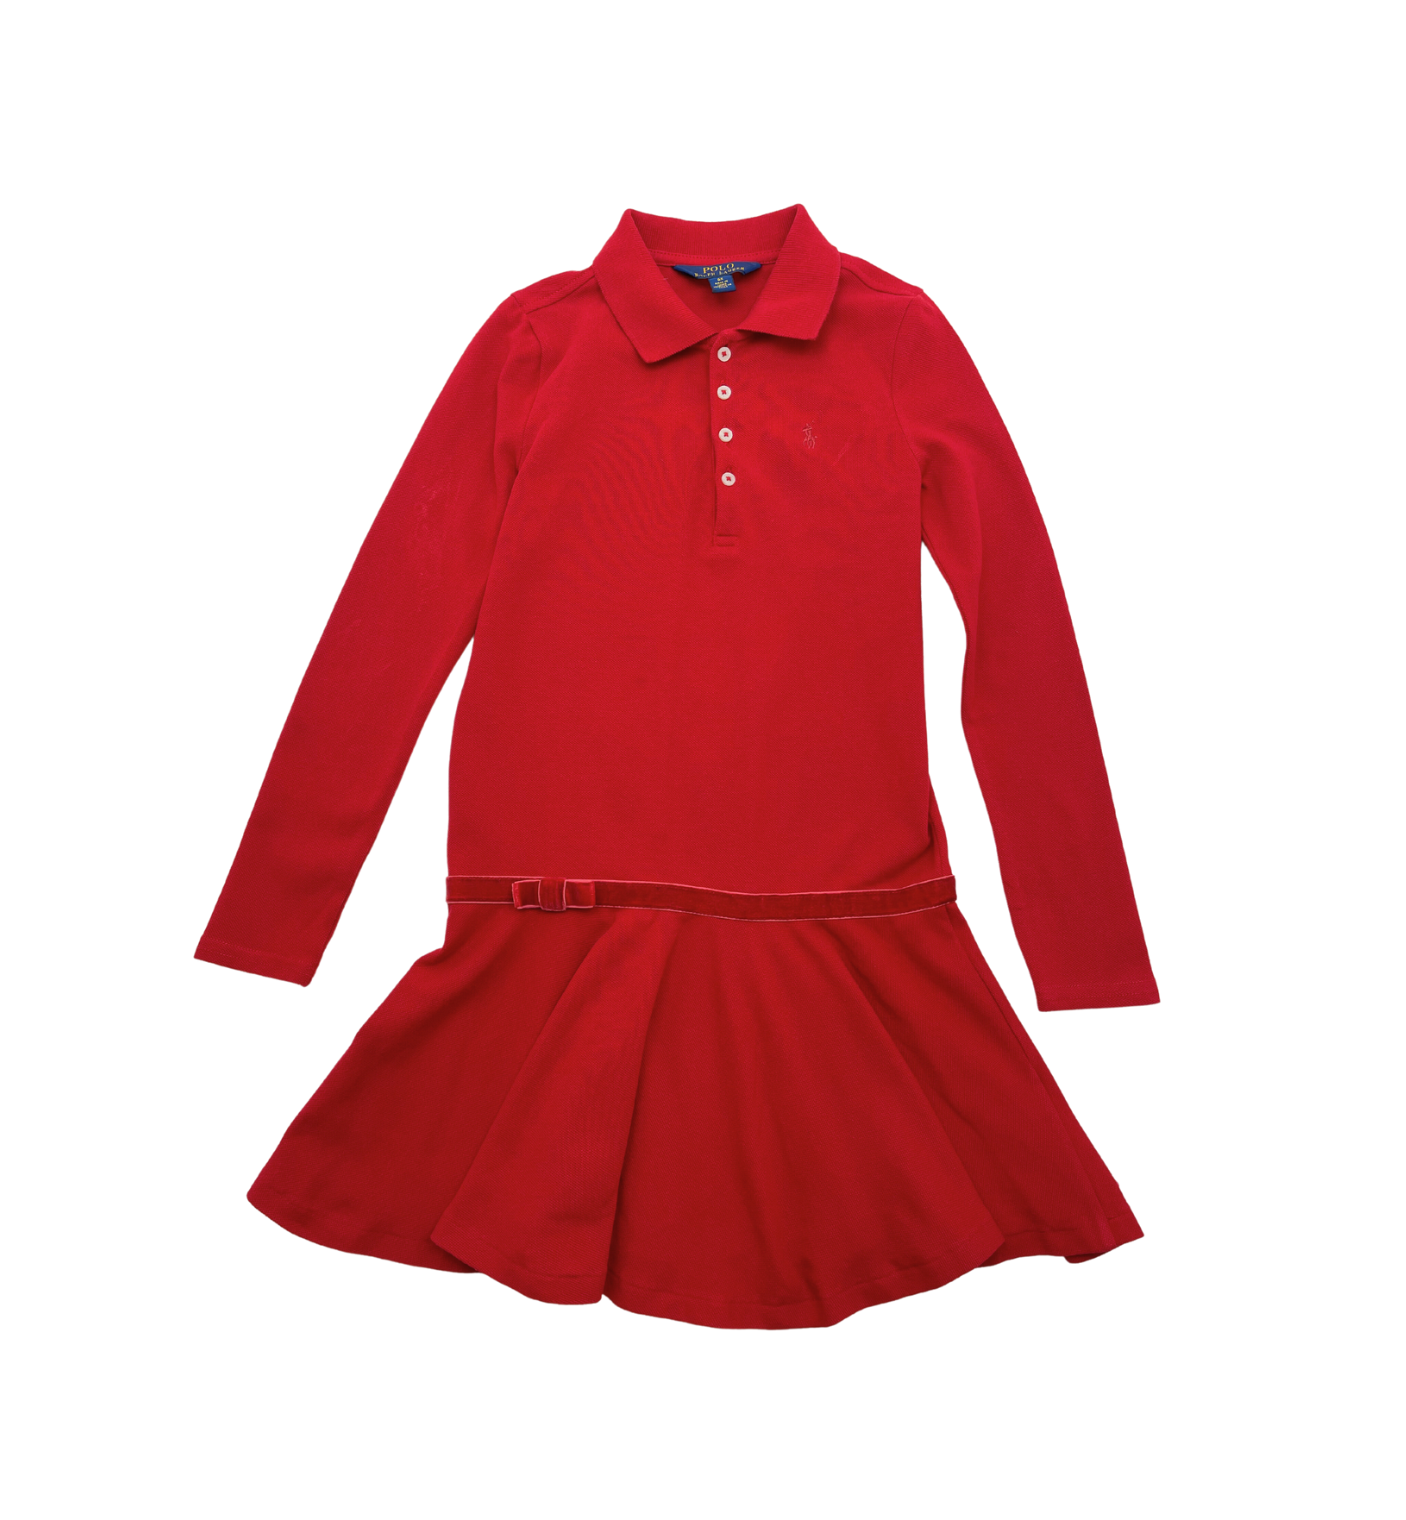 RALPH LAUREN - Red dress - 6 years old